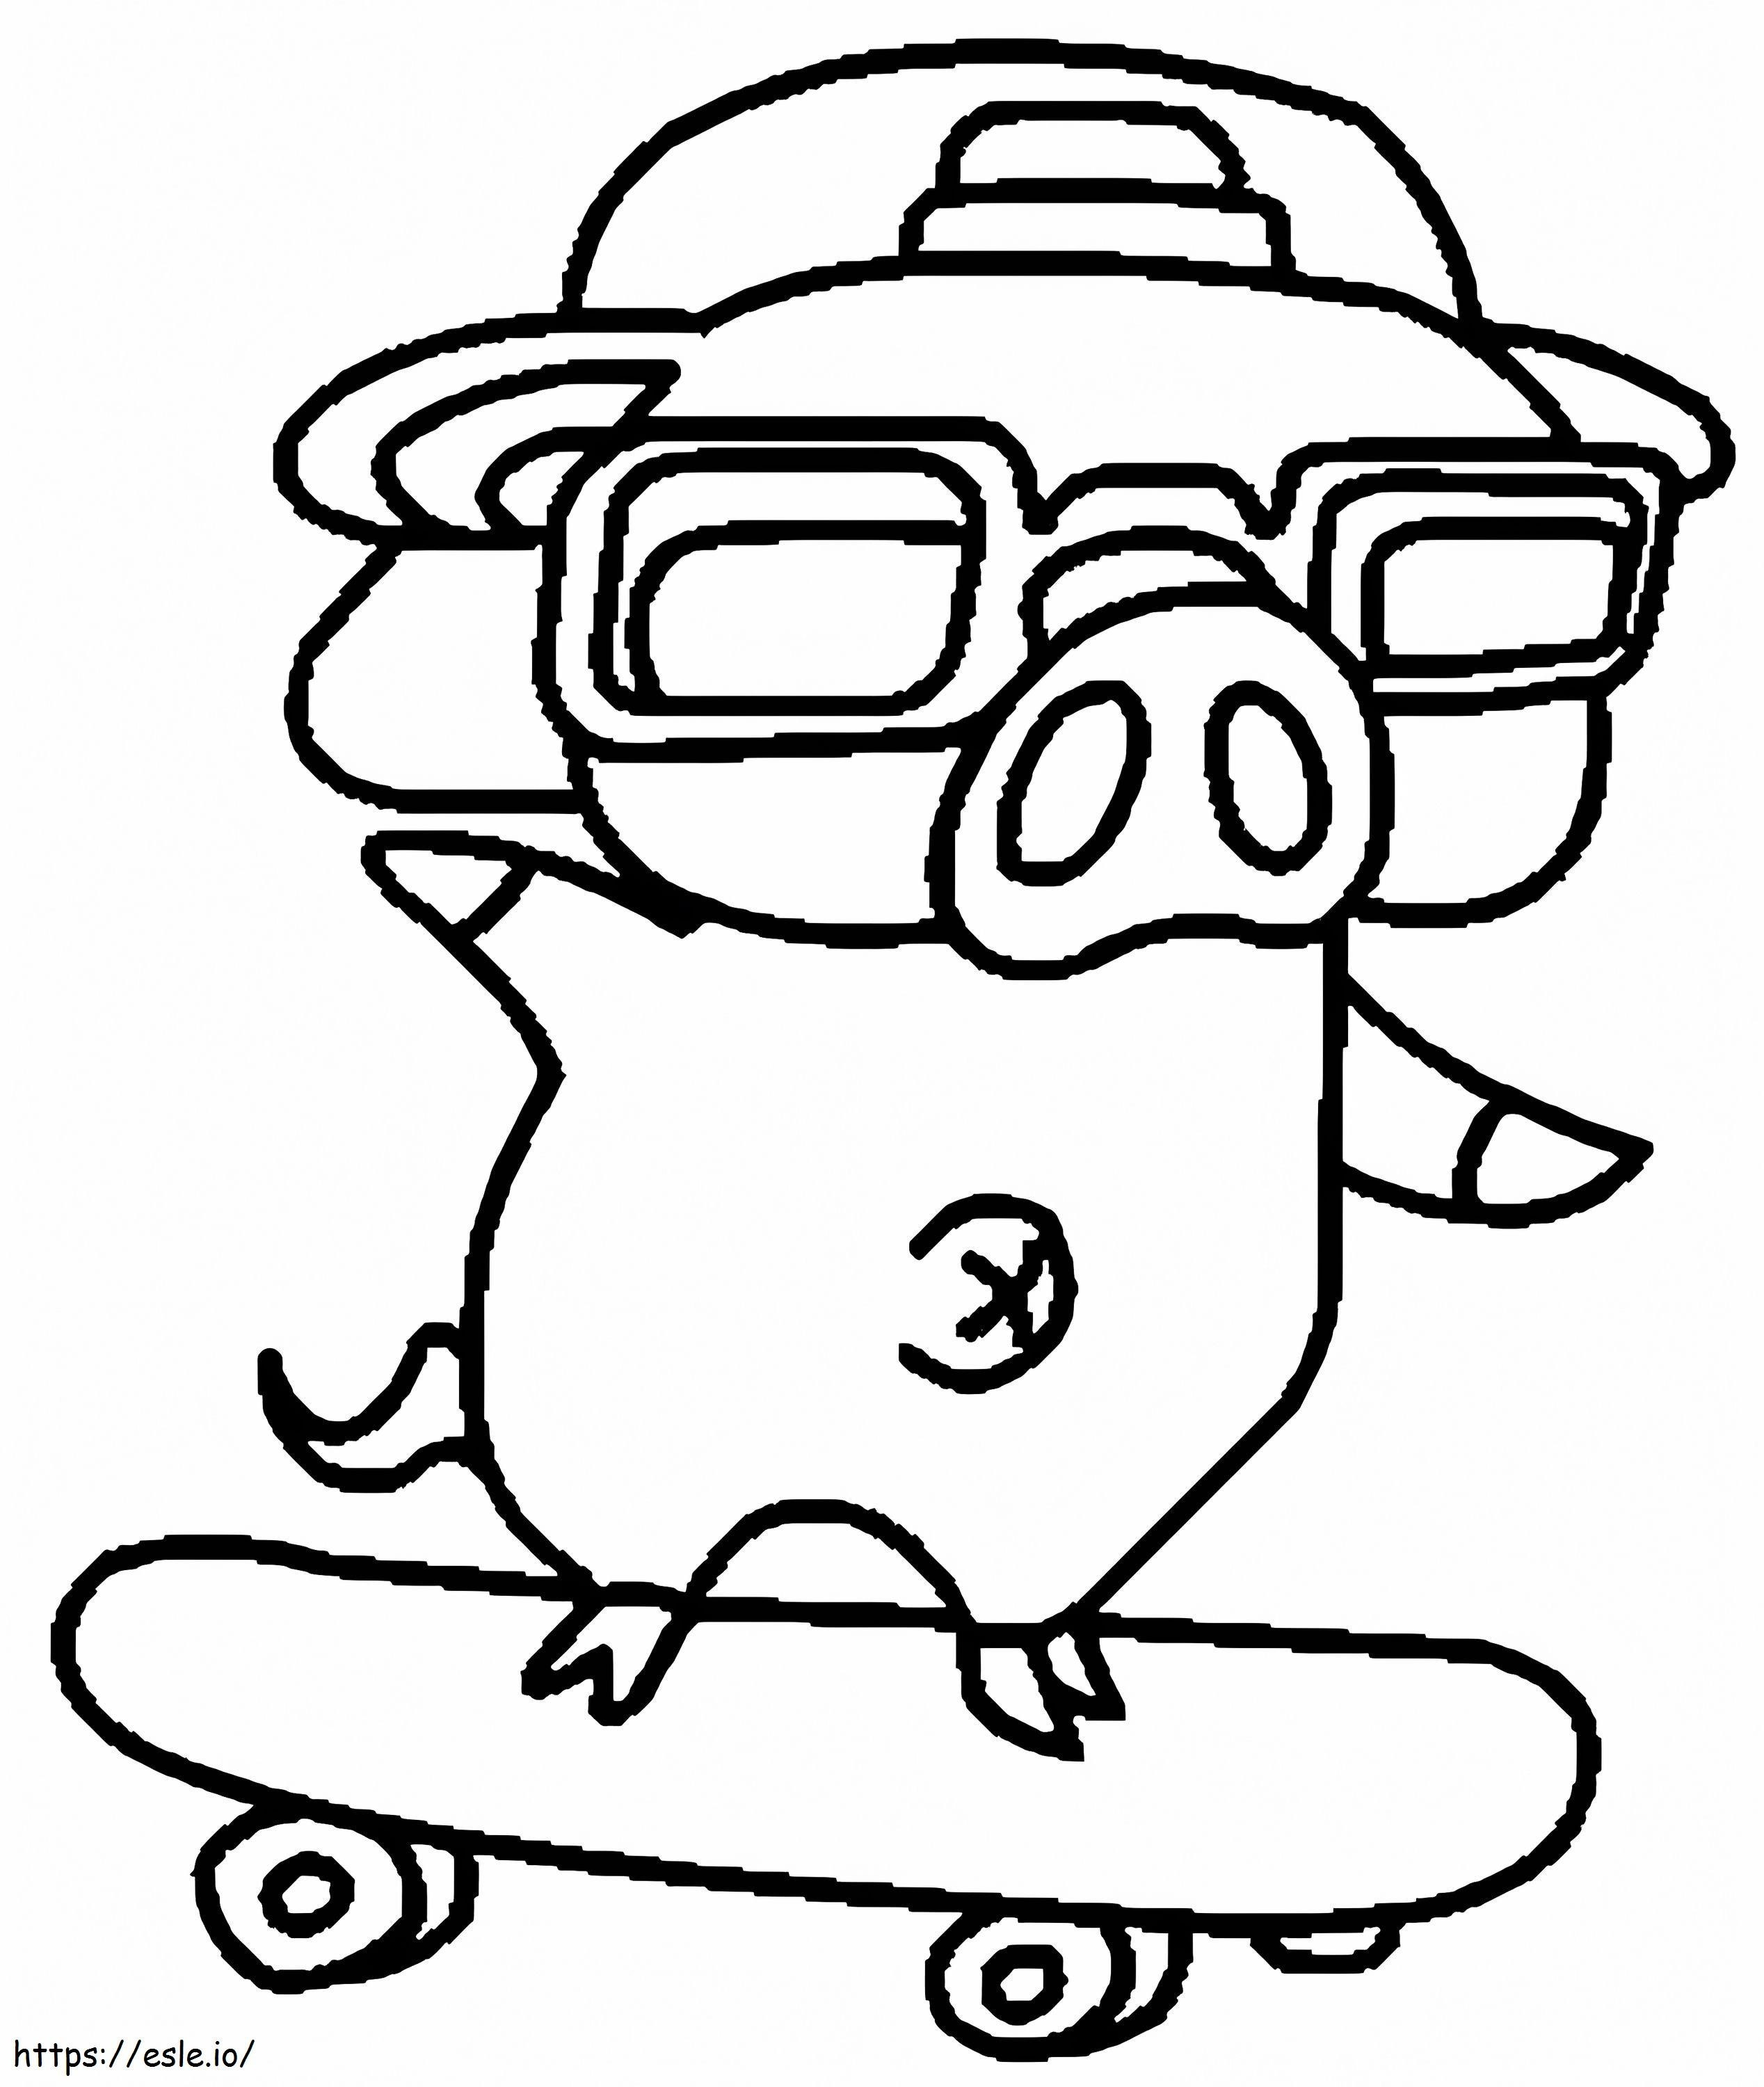 Um porco com skate para colorir